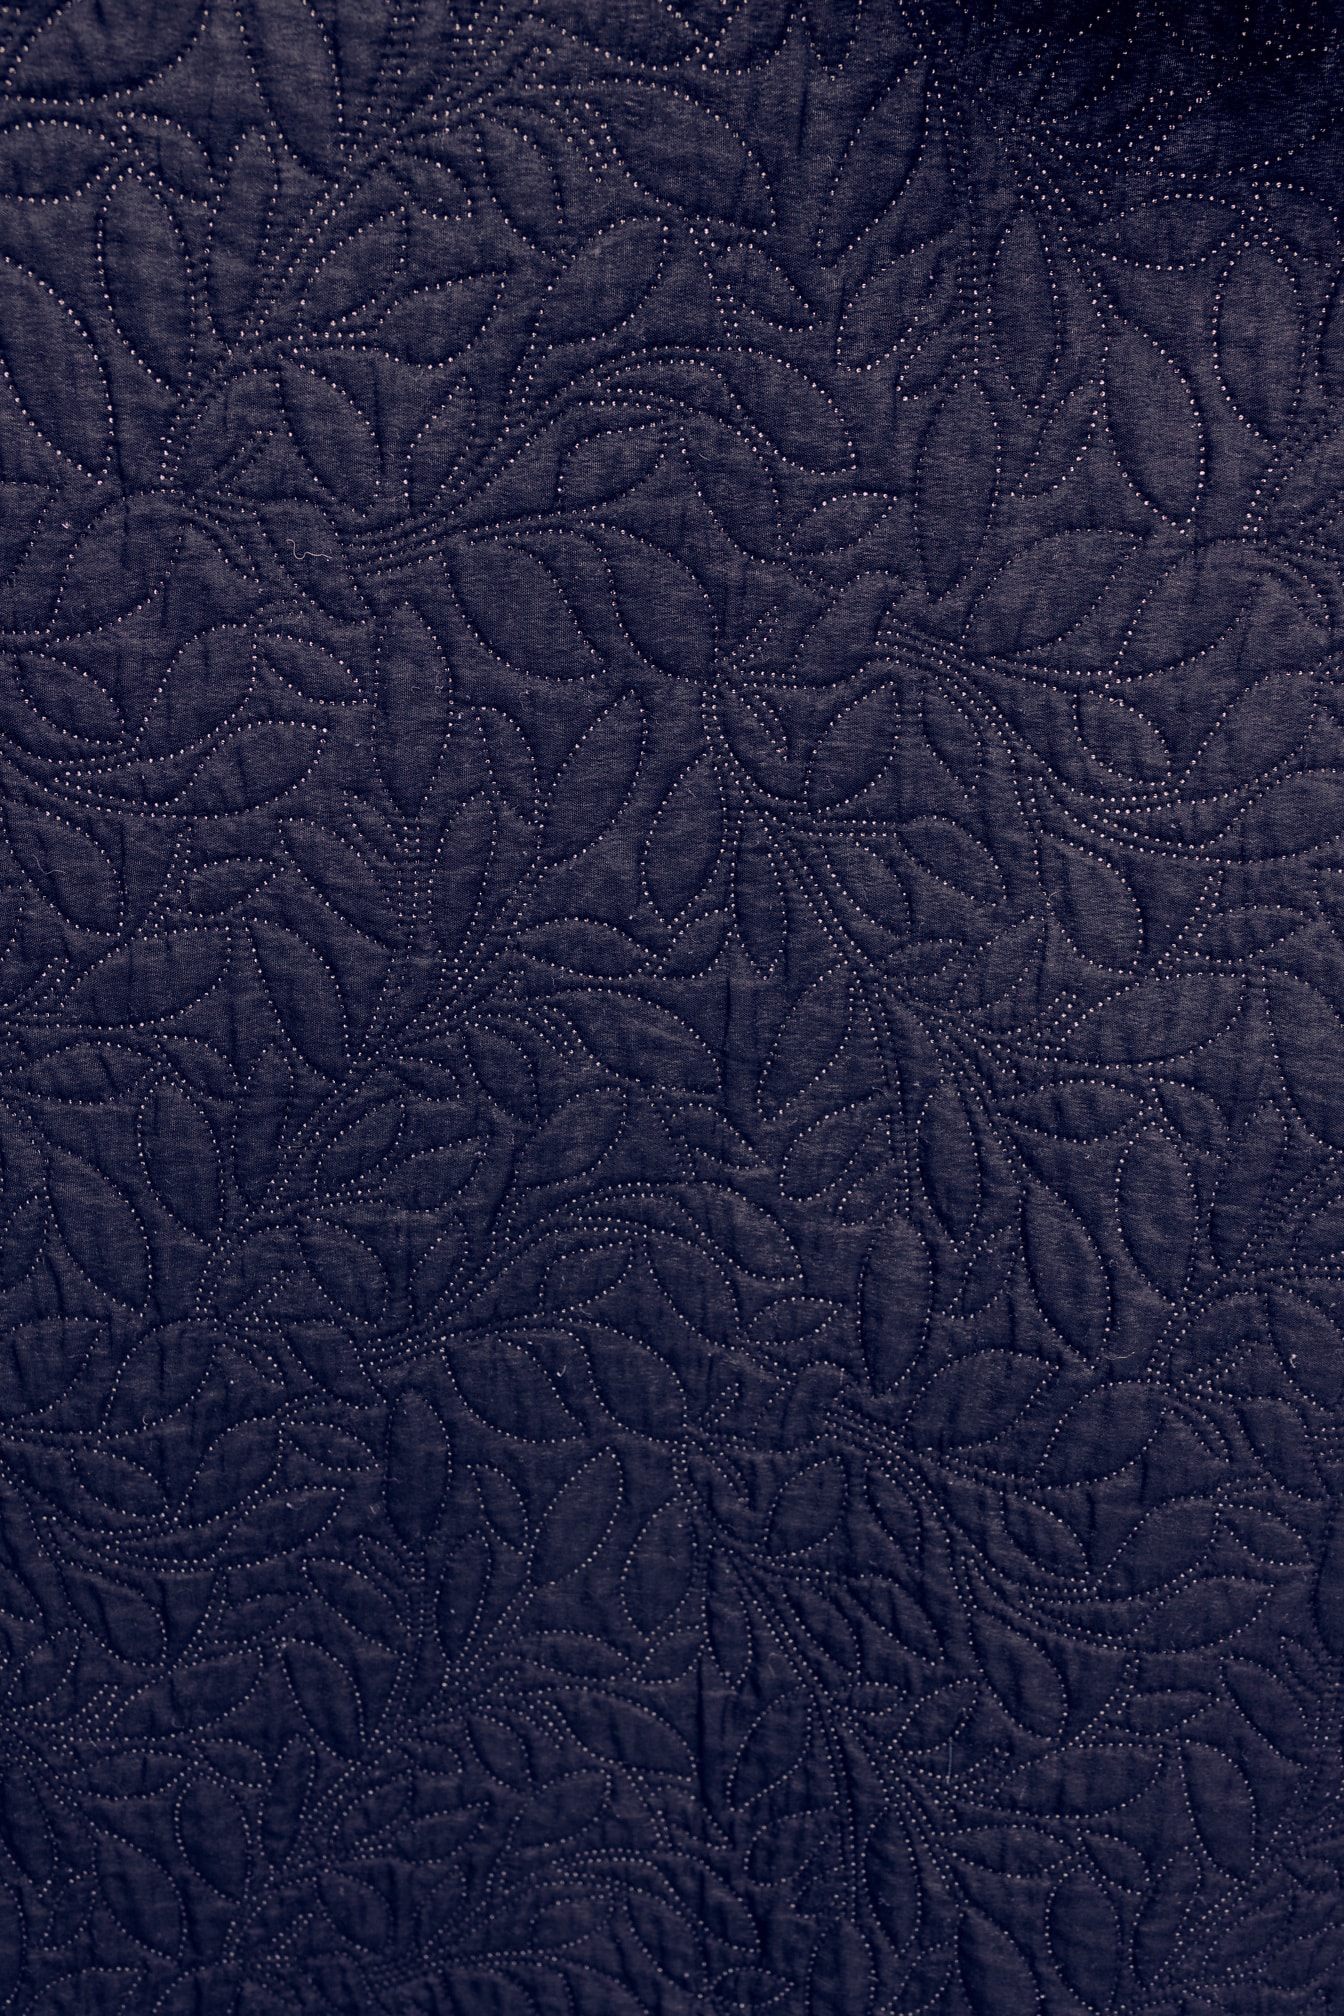 Vải cotton màu xanh đậm với trang trí